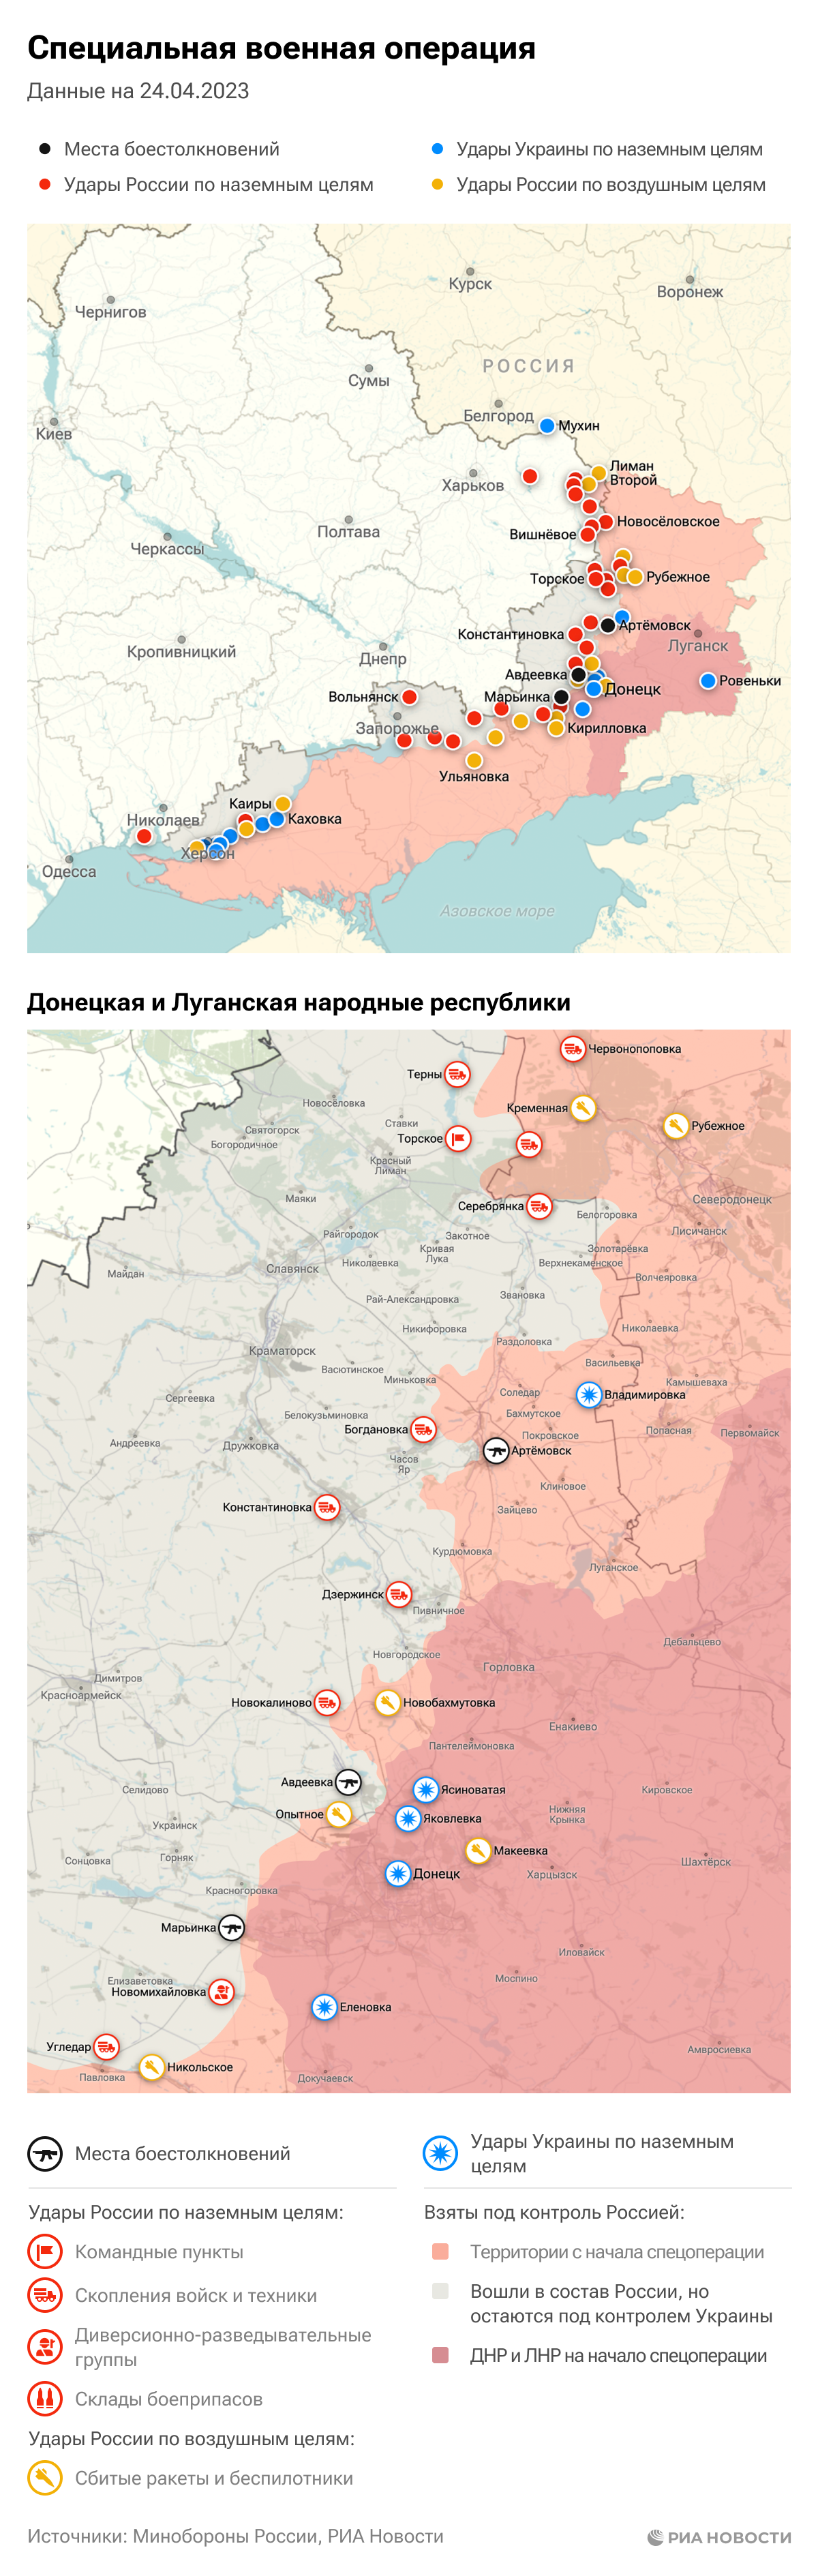 Карта спецоперации Вооруженных сил России на Украине на 24.04.2023